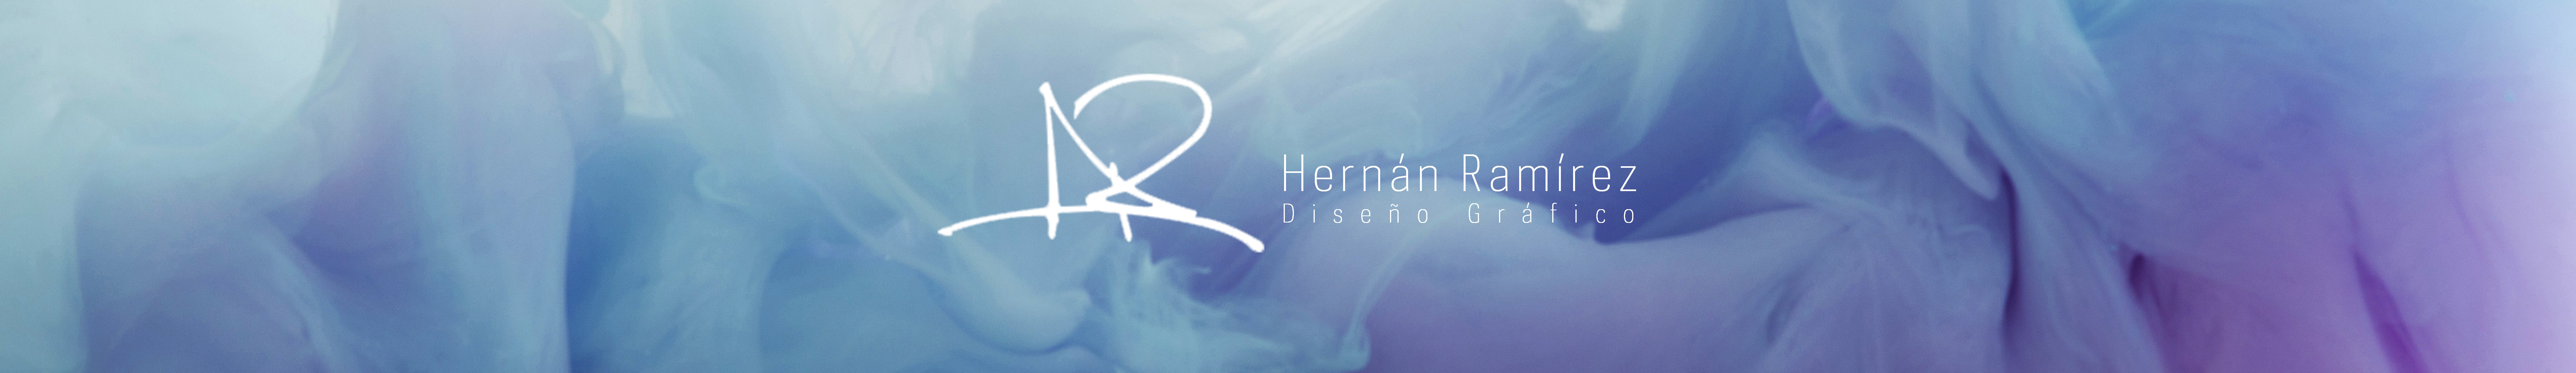 Hernán Ramírez's profile banner